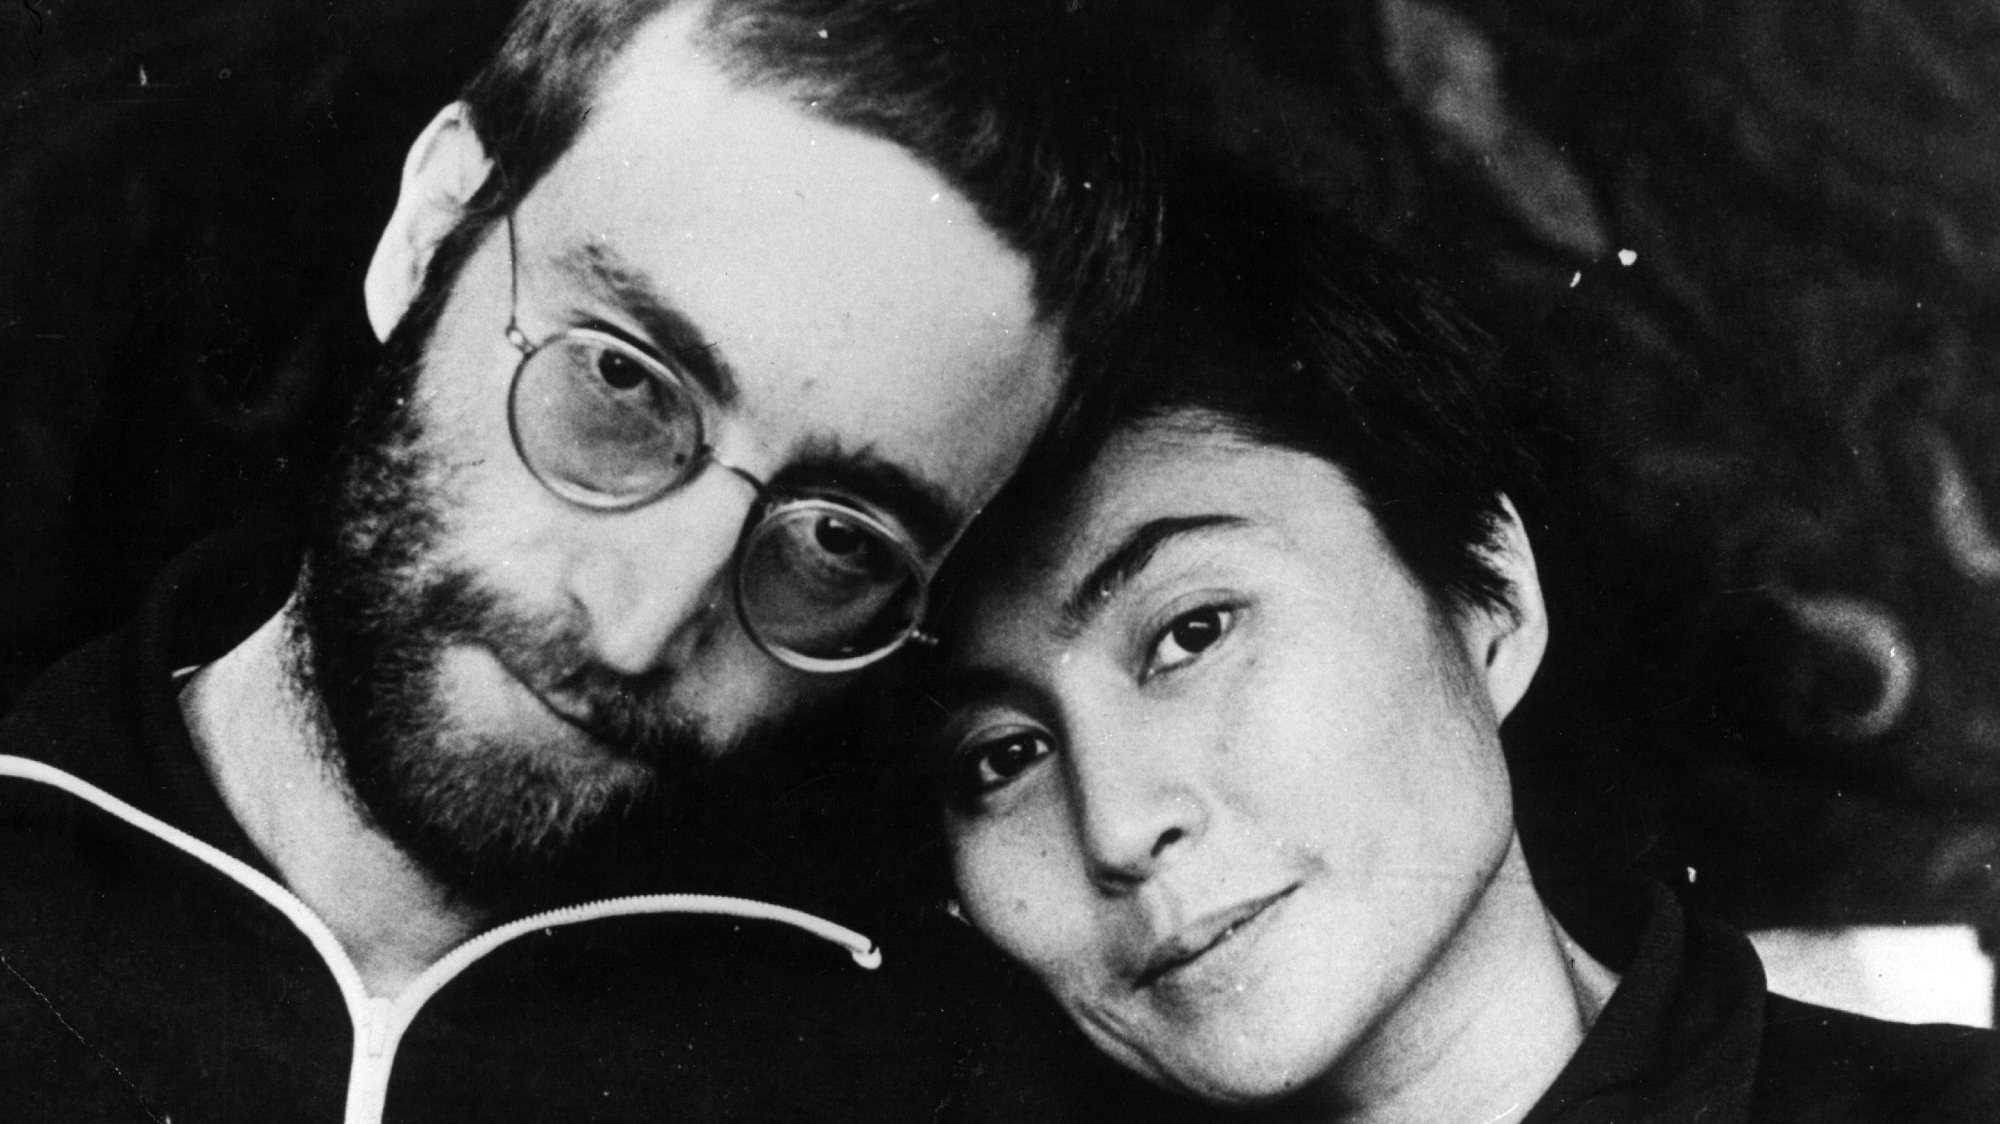 Yoko Ono reagiu, dizendo que Lennon &quot;teria adorado isto&quot;, e que 'Imagine' simboliza &quot;aquilo em que acreditavam&quot; na altura e mesmo atualmente